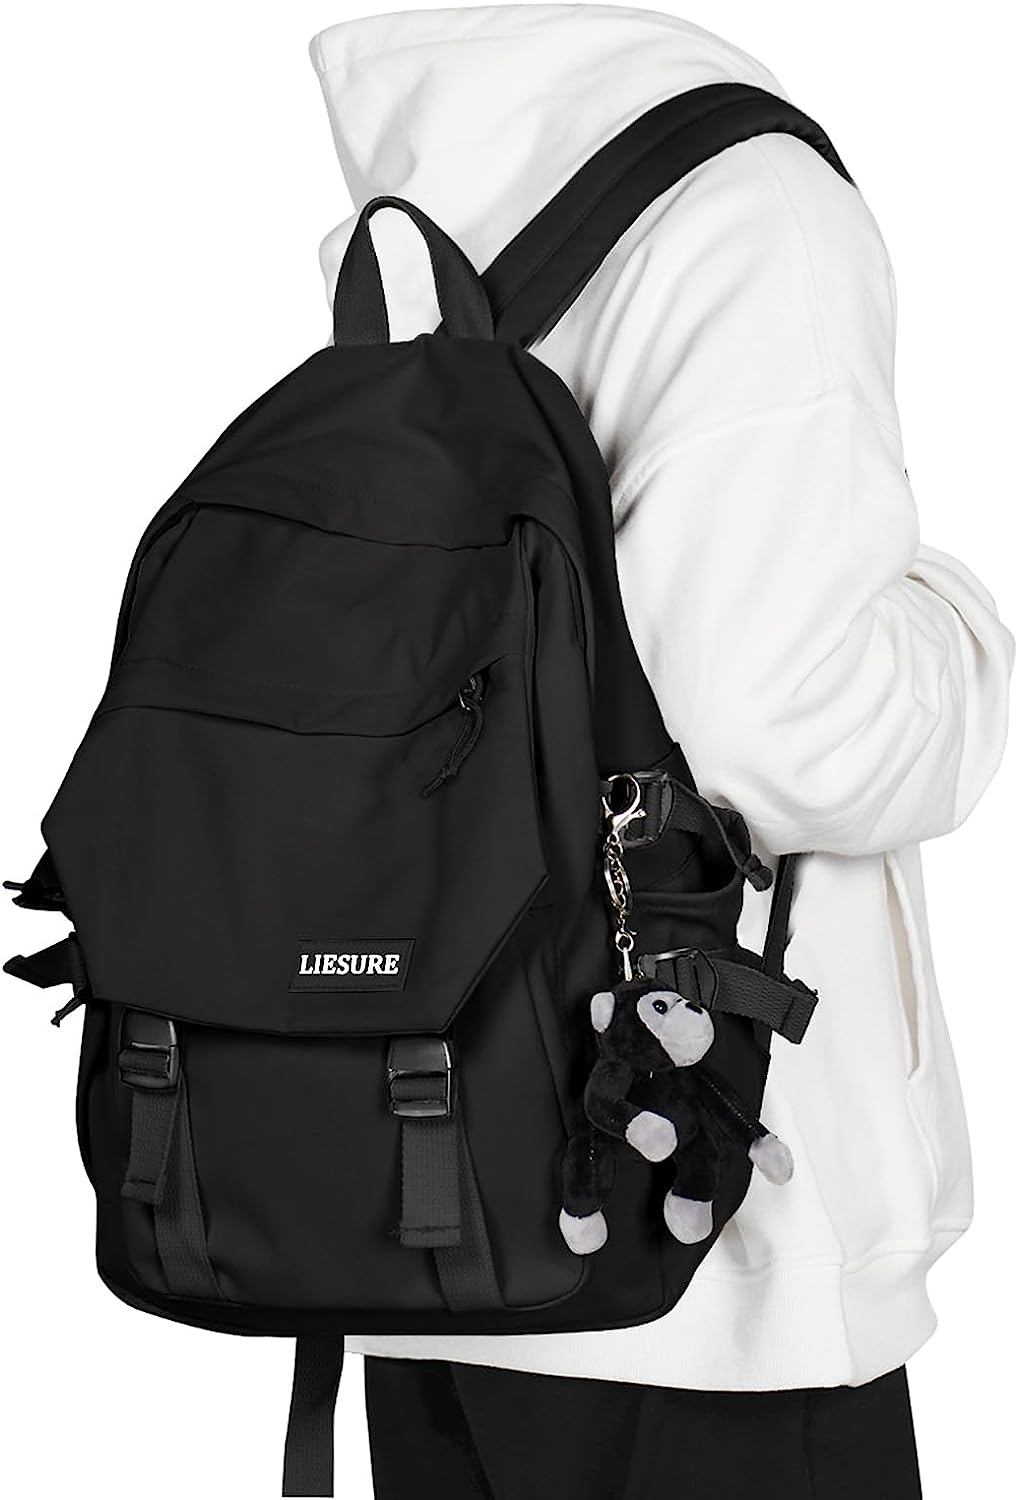 coowoz College Backpack Waterproof Black College Bags [...]